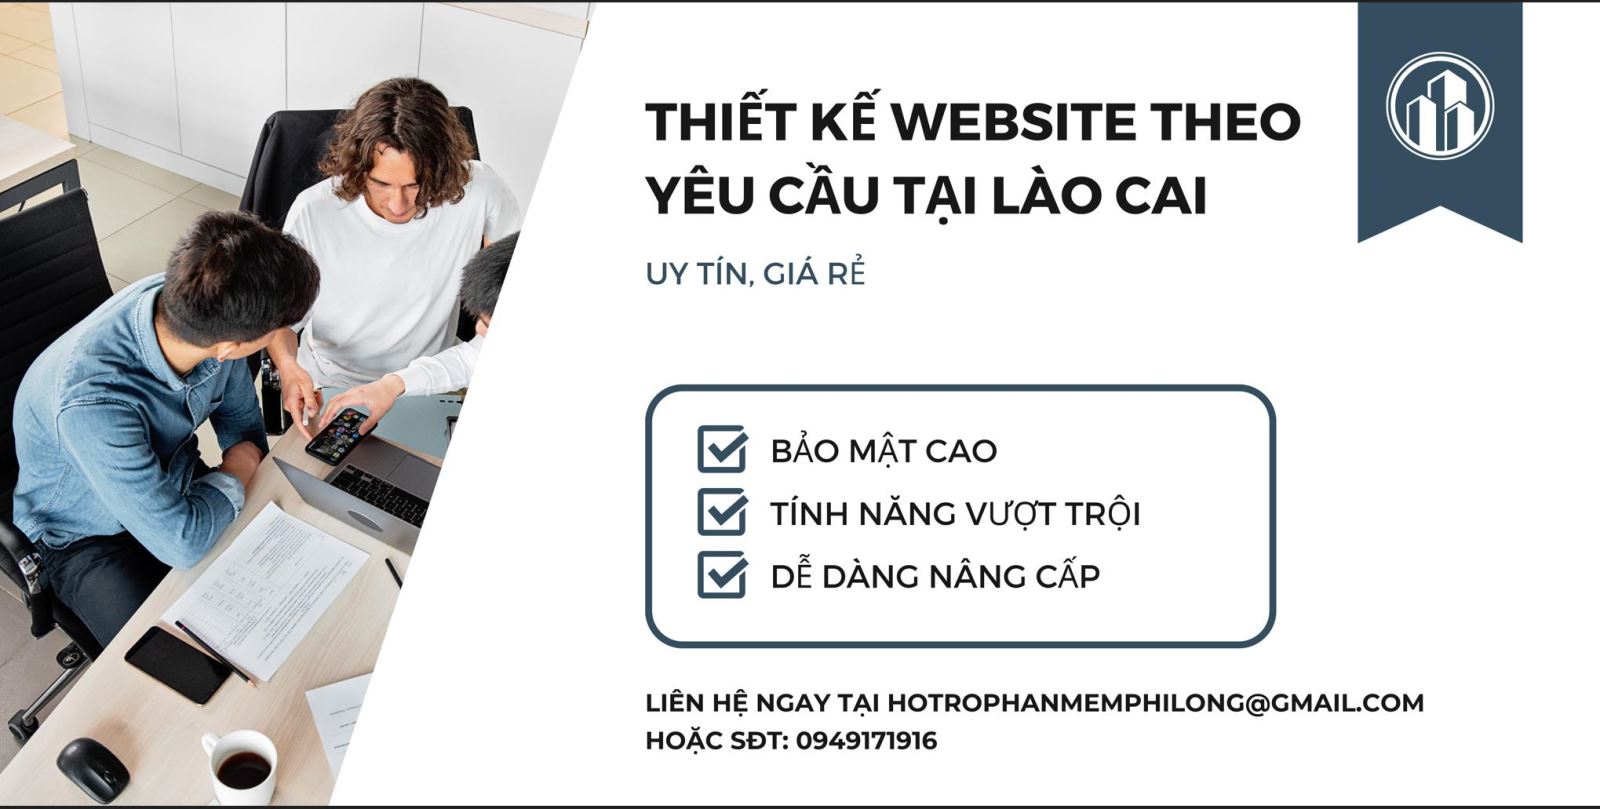 Thiết kế website theo yêu cầu tại Lào Cai | Sa Pa | Uy tín | Giá rẻ